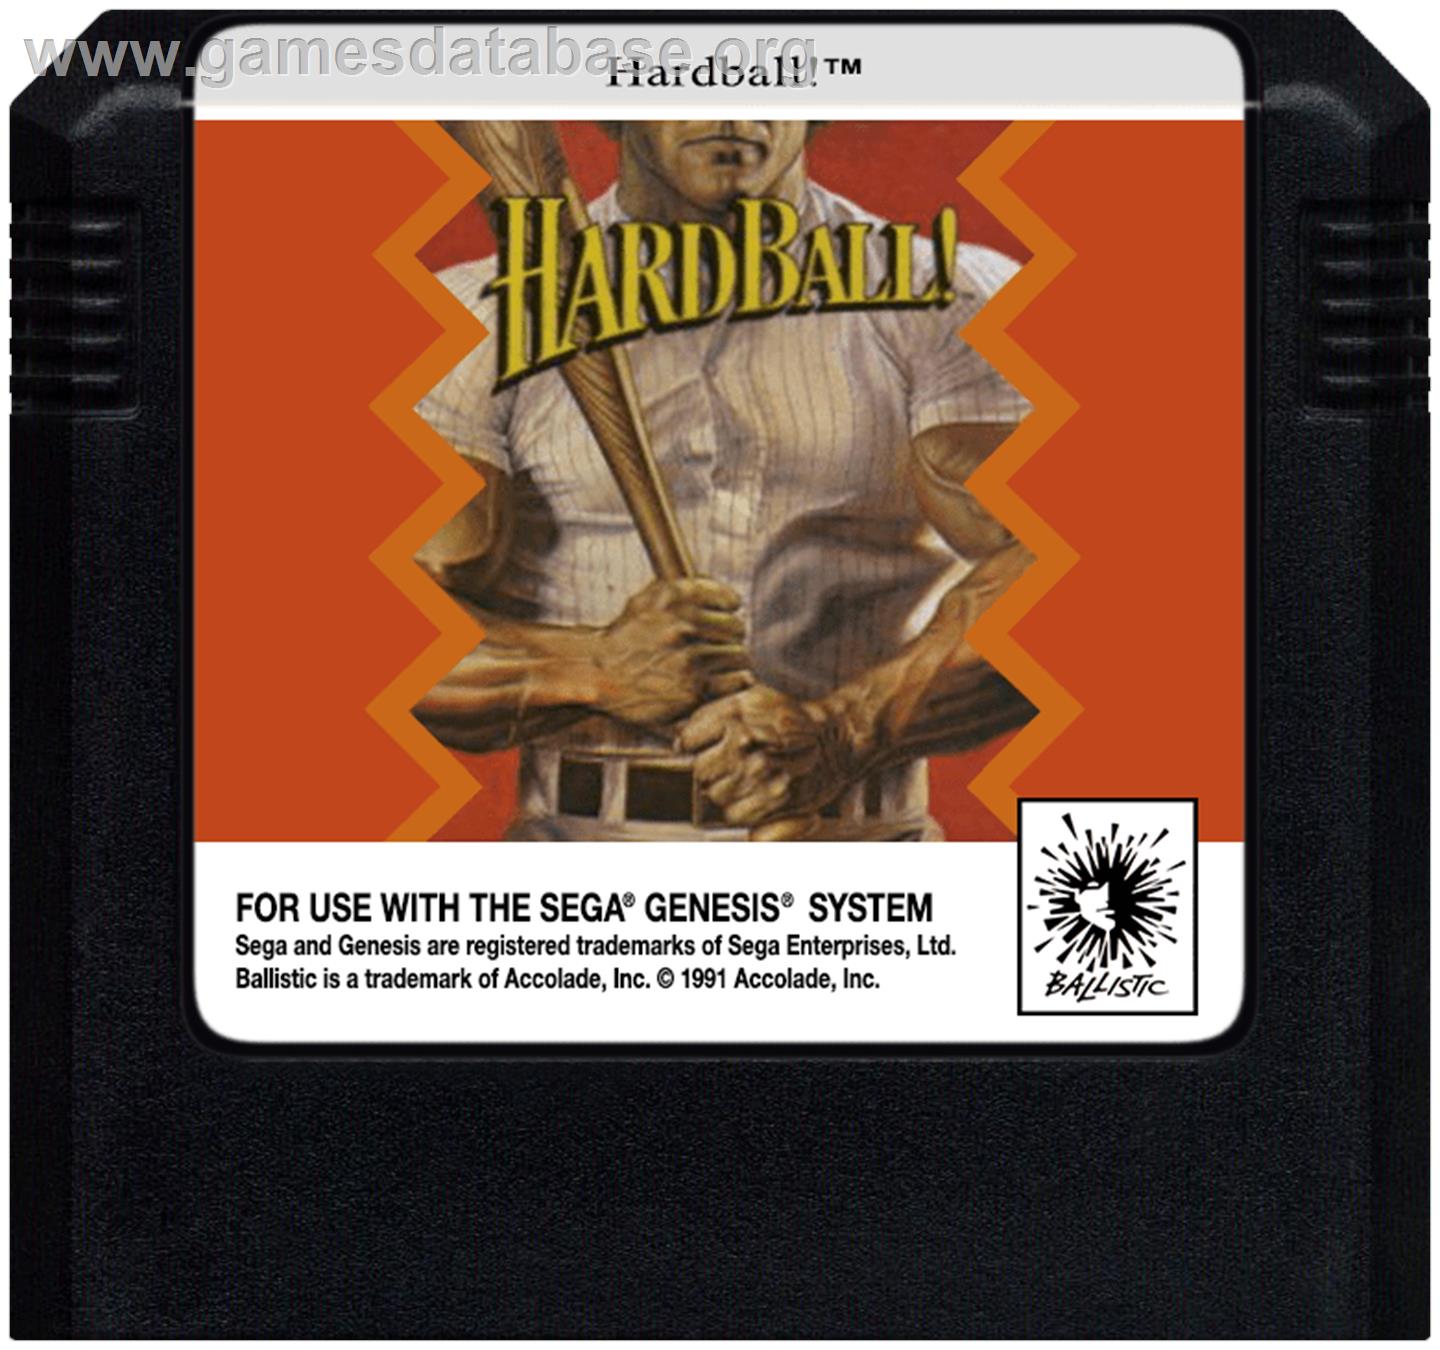 HardBall - Sega Genesis - Artwork - Cartridge